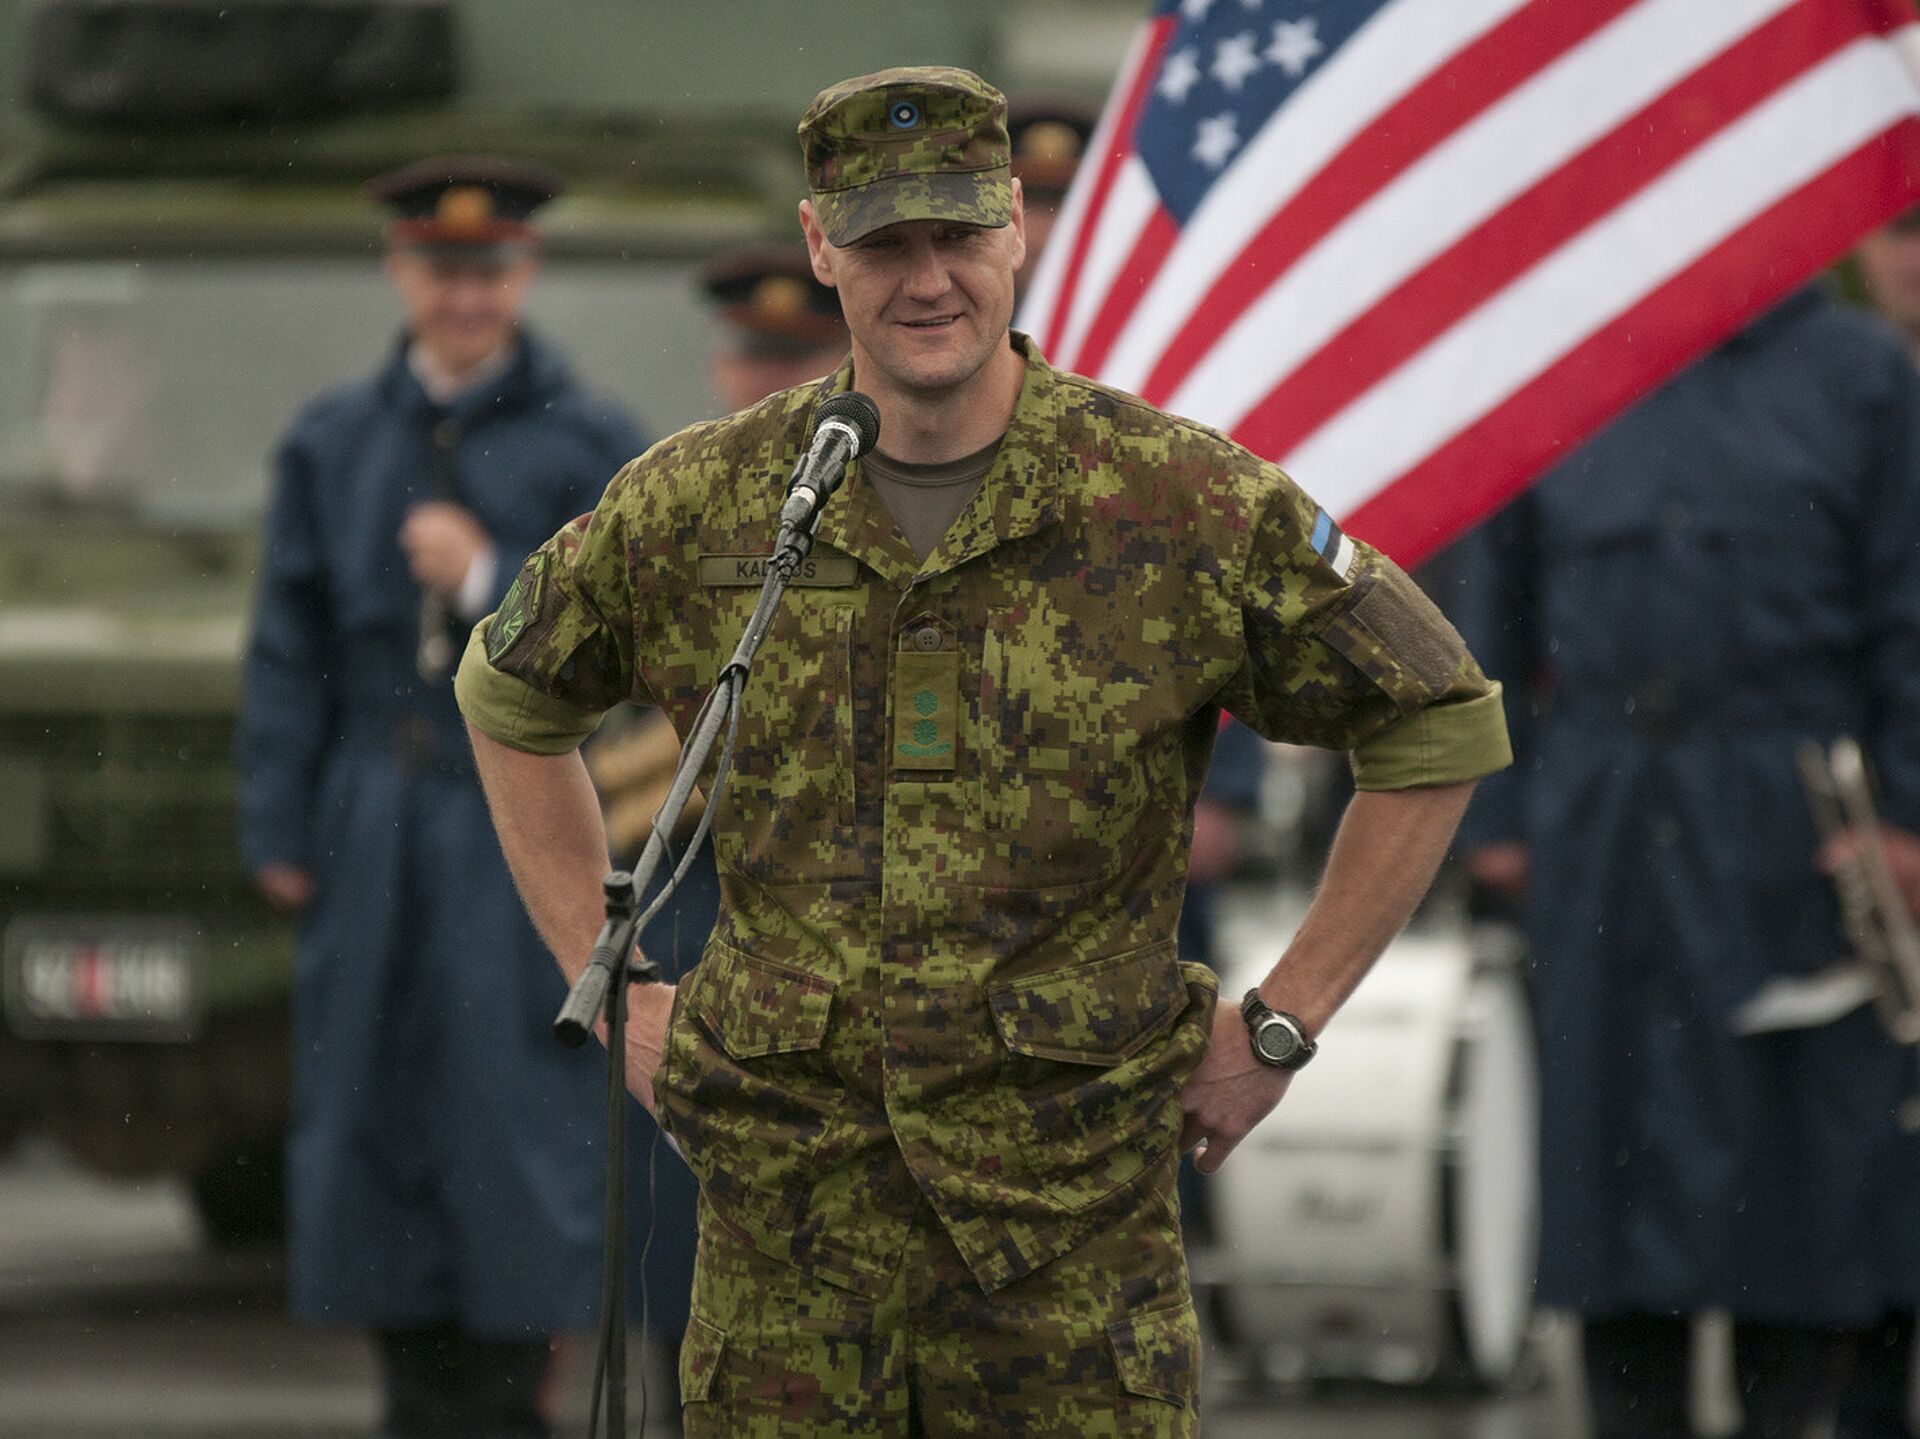 Эстонская армия фото